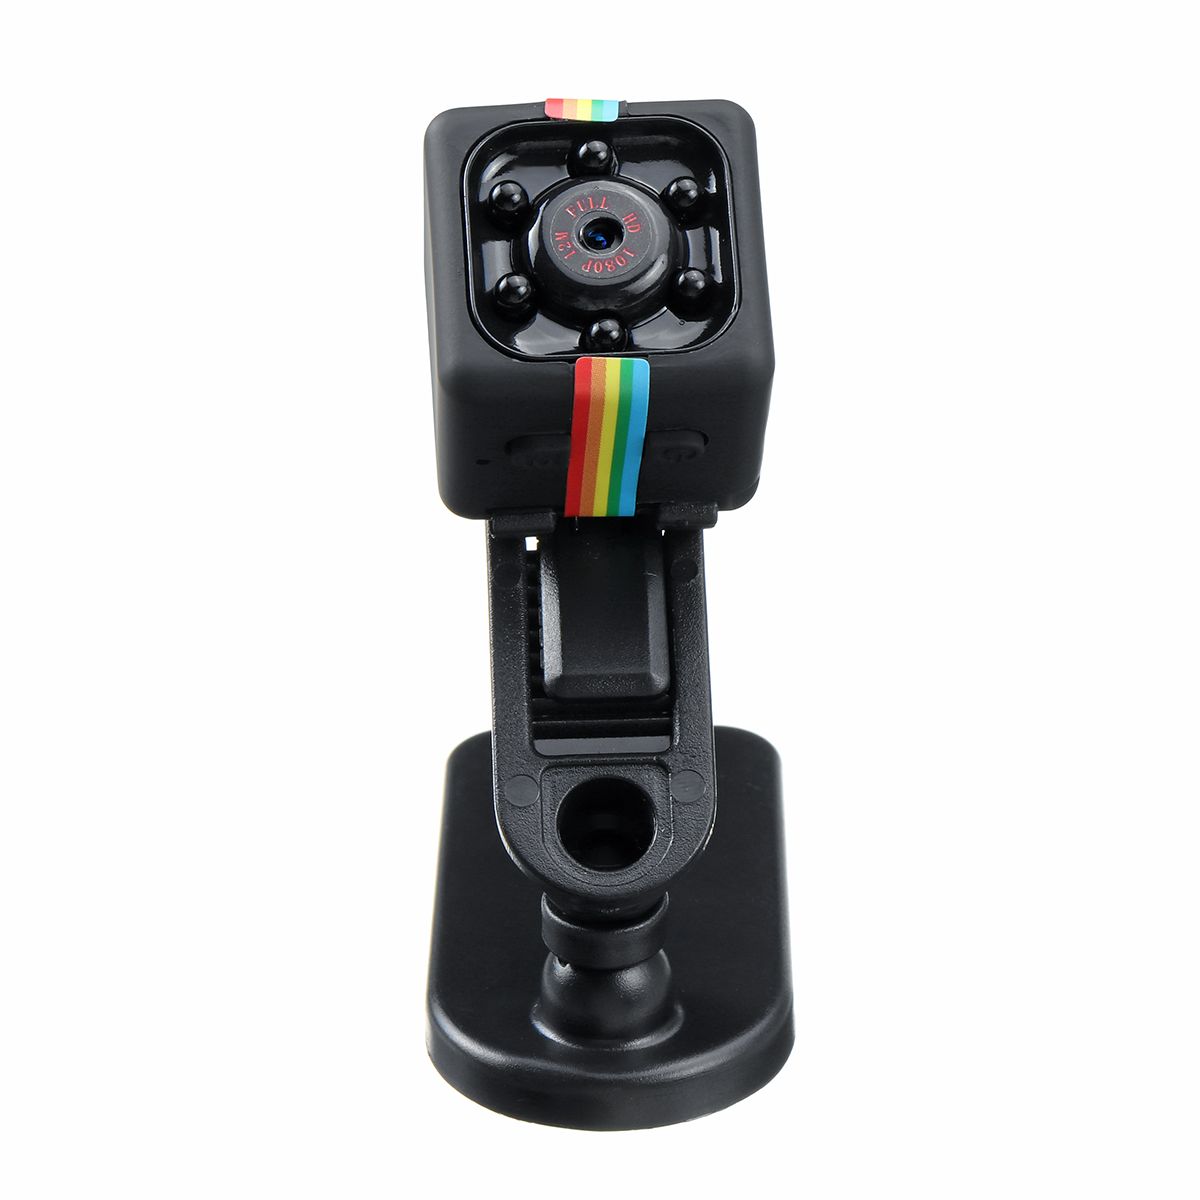 Mini-HD-1080P-WiFi-Camera-Dice-Video-Night-Vision-USB-DVR-Recording-Motion-Camera-Remote-Monitoring--1622597